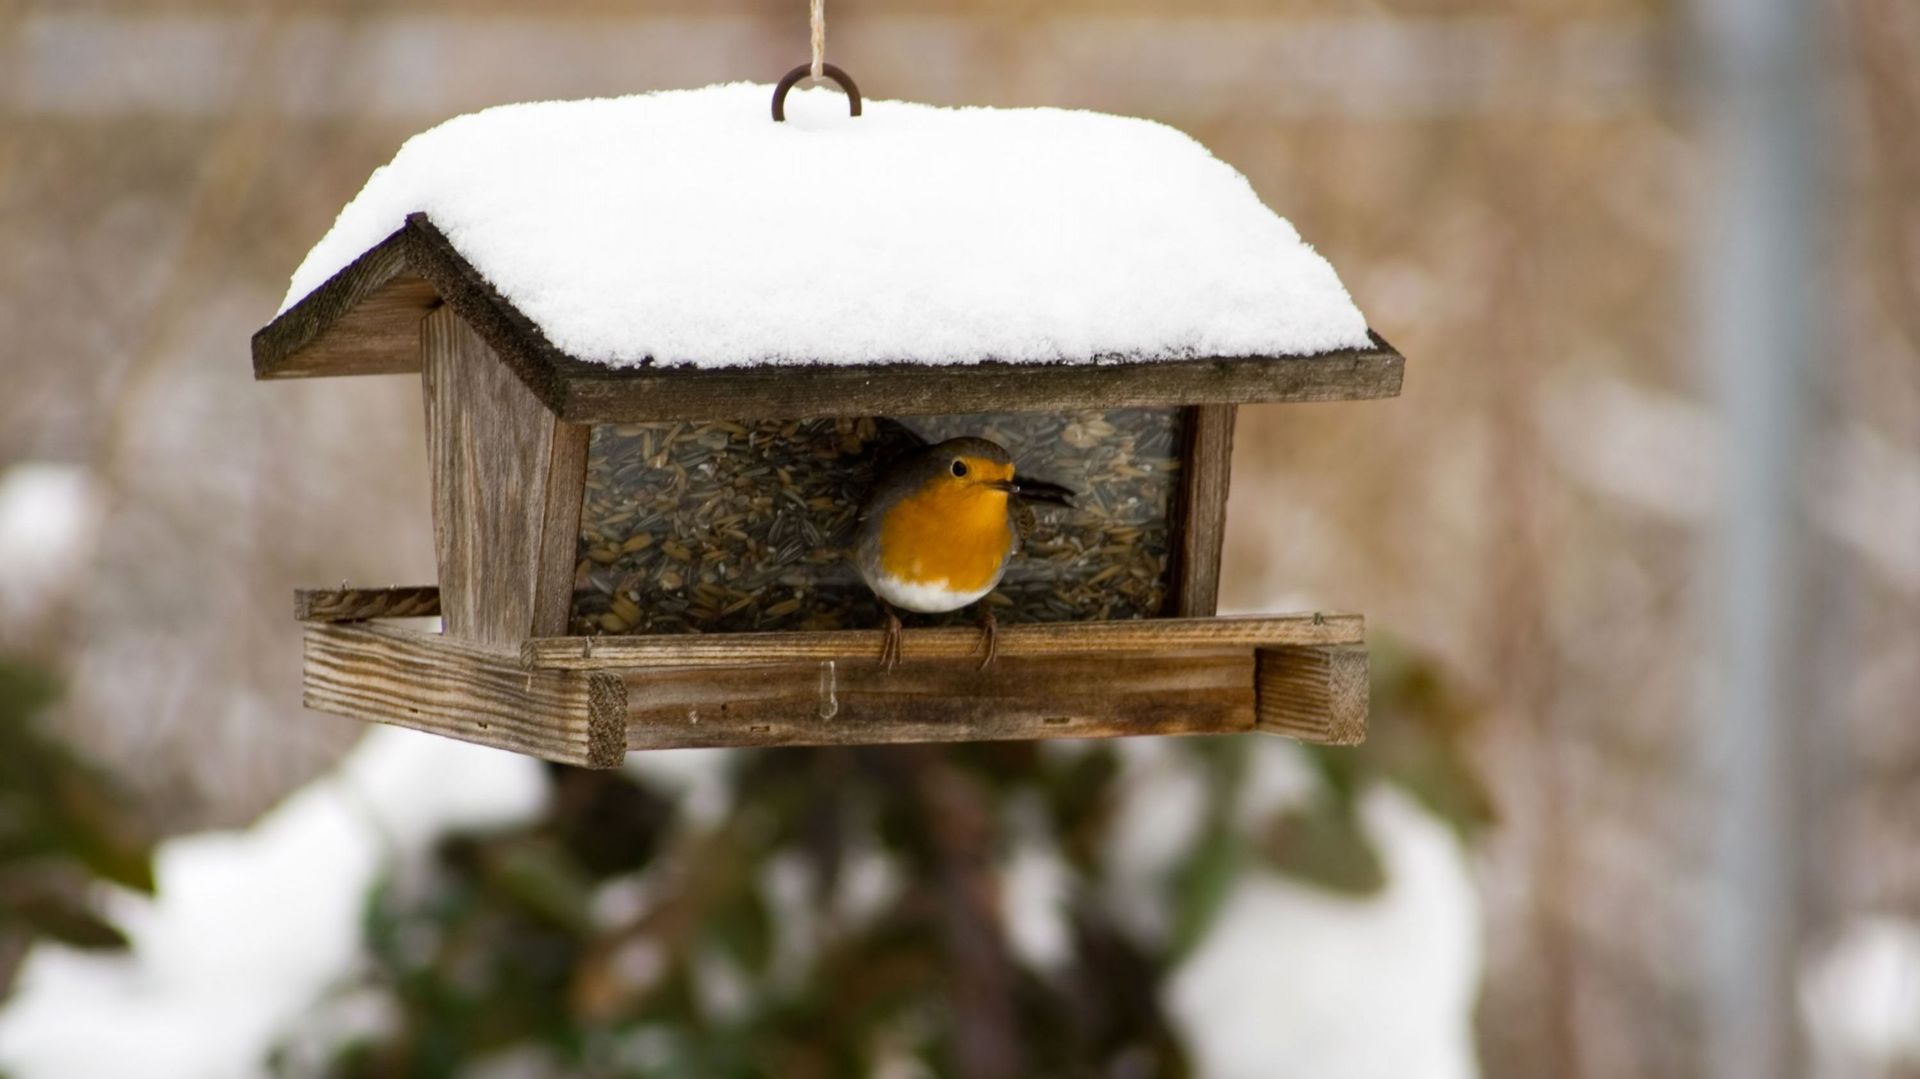 Nourrir les oiseaux en hiver, oui mais… — GOBG